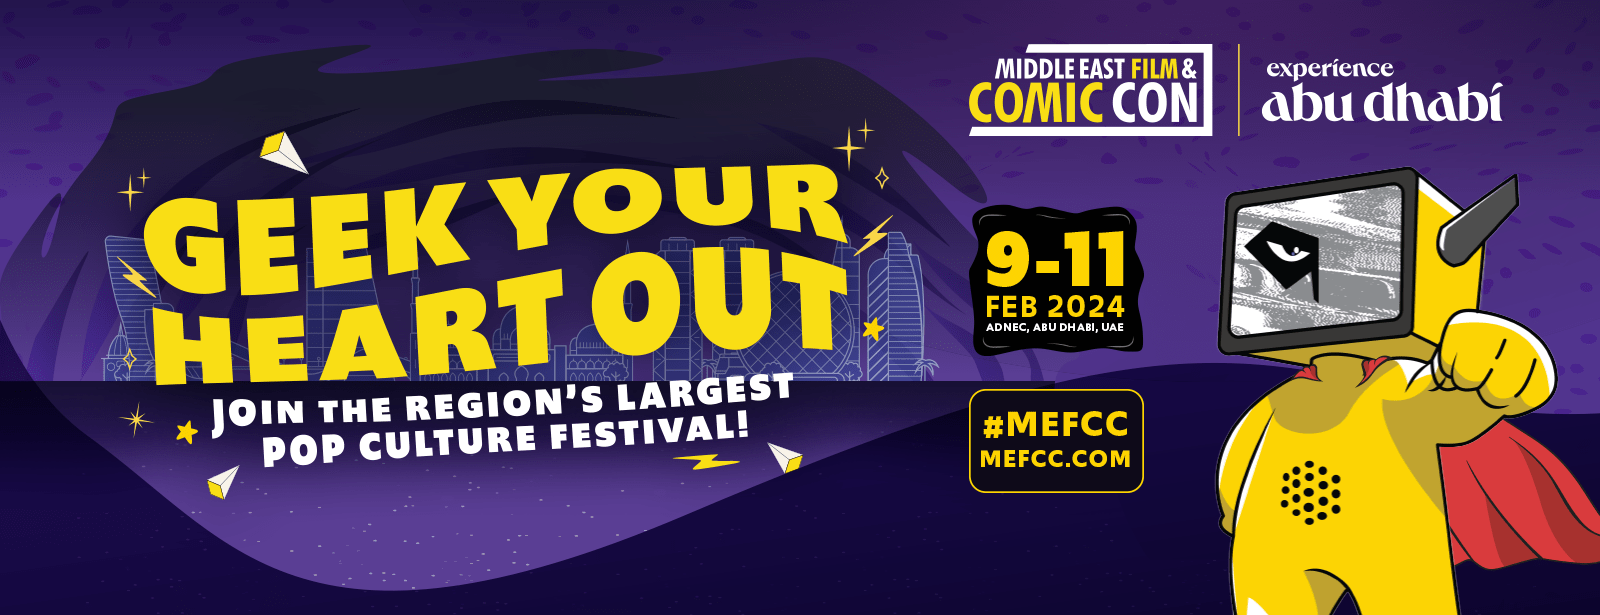 Middle East Film & Comic Con 2024 (MEFCC) in Abu Dhabi - Coming Soon in UAE